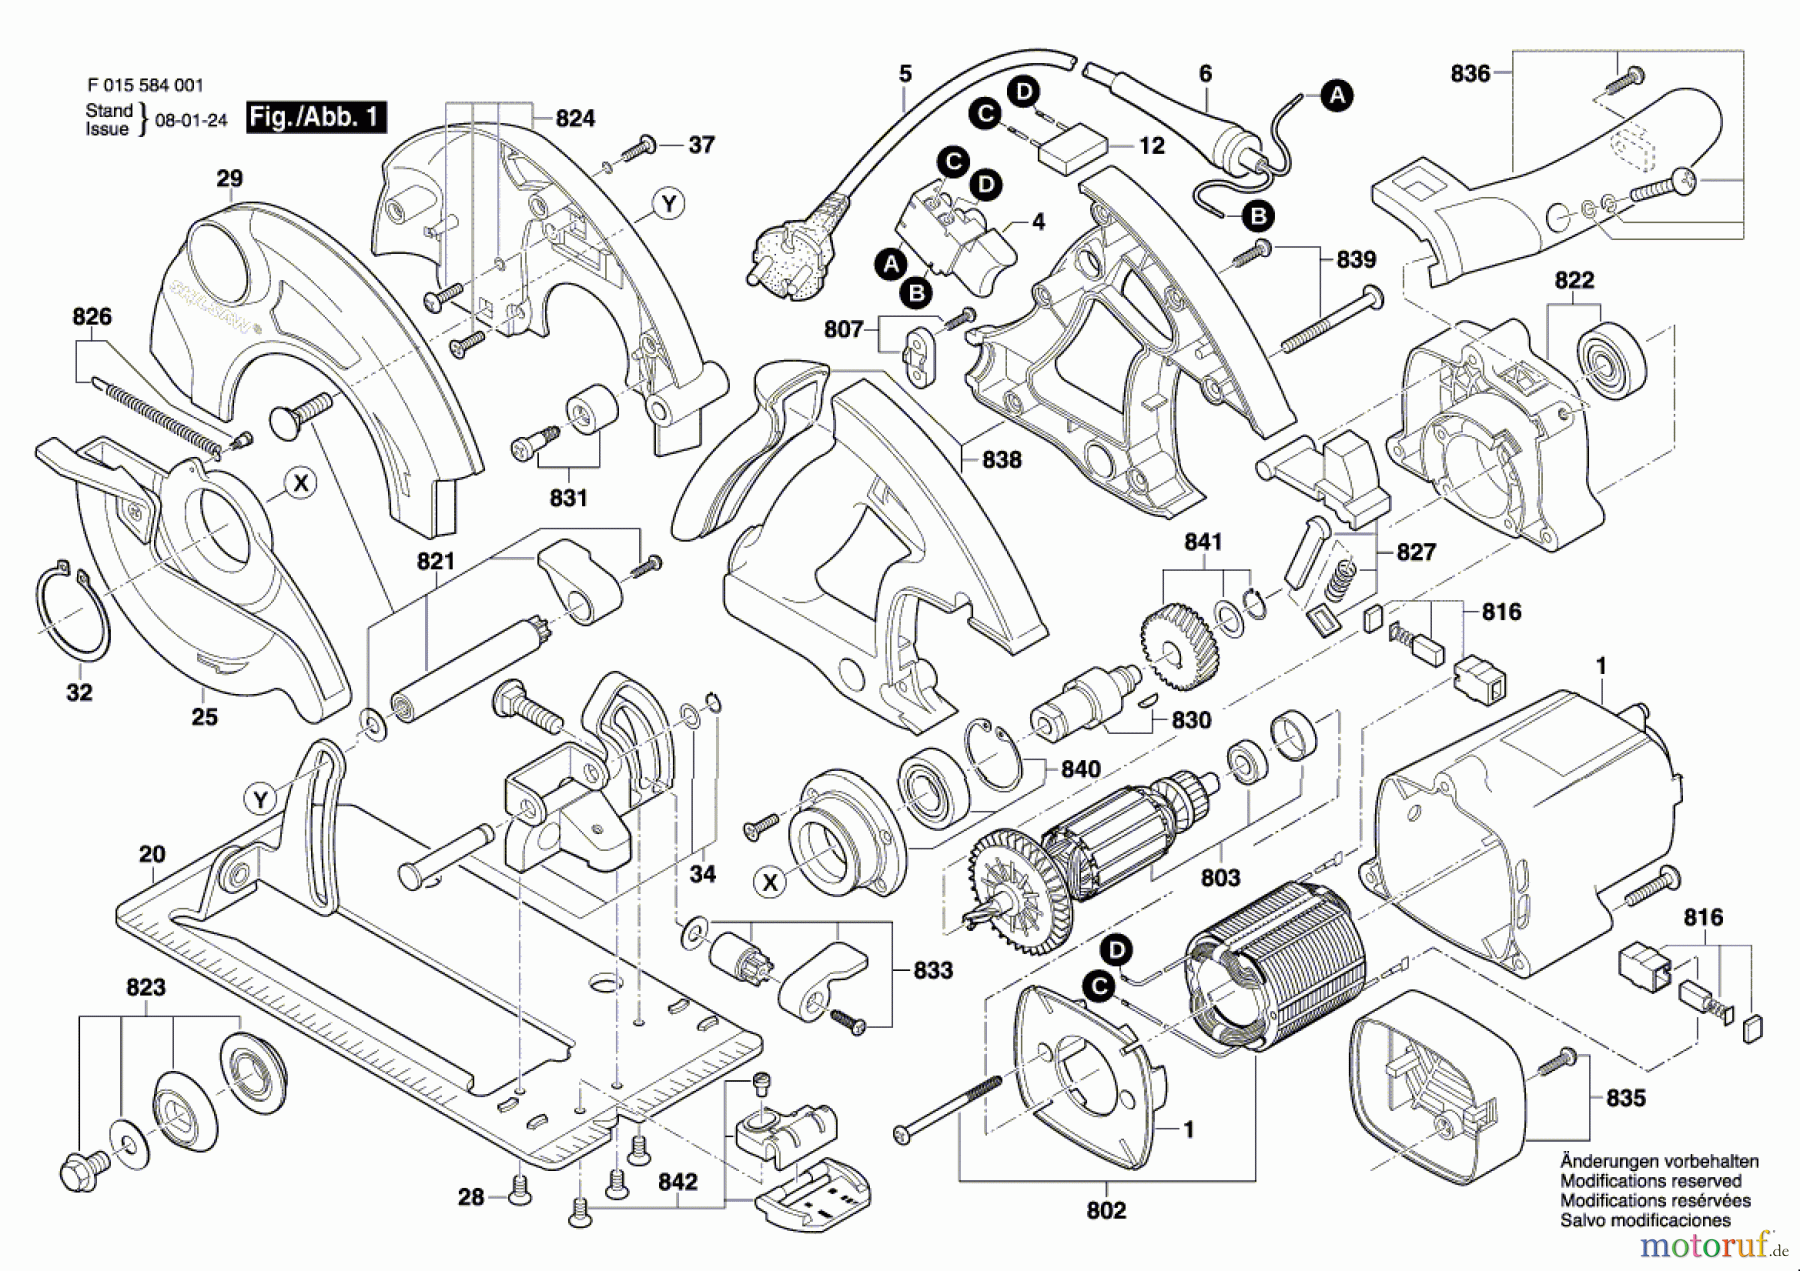  Bosch Werkzeug Handkreissäge 5940 Seite 1